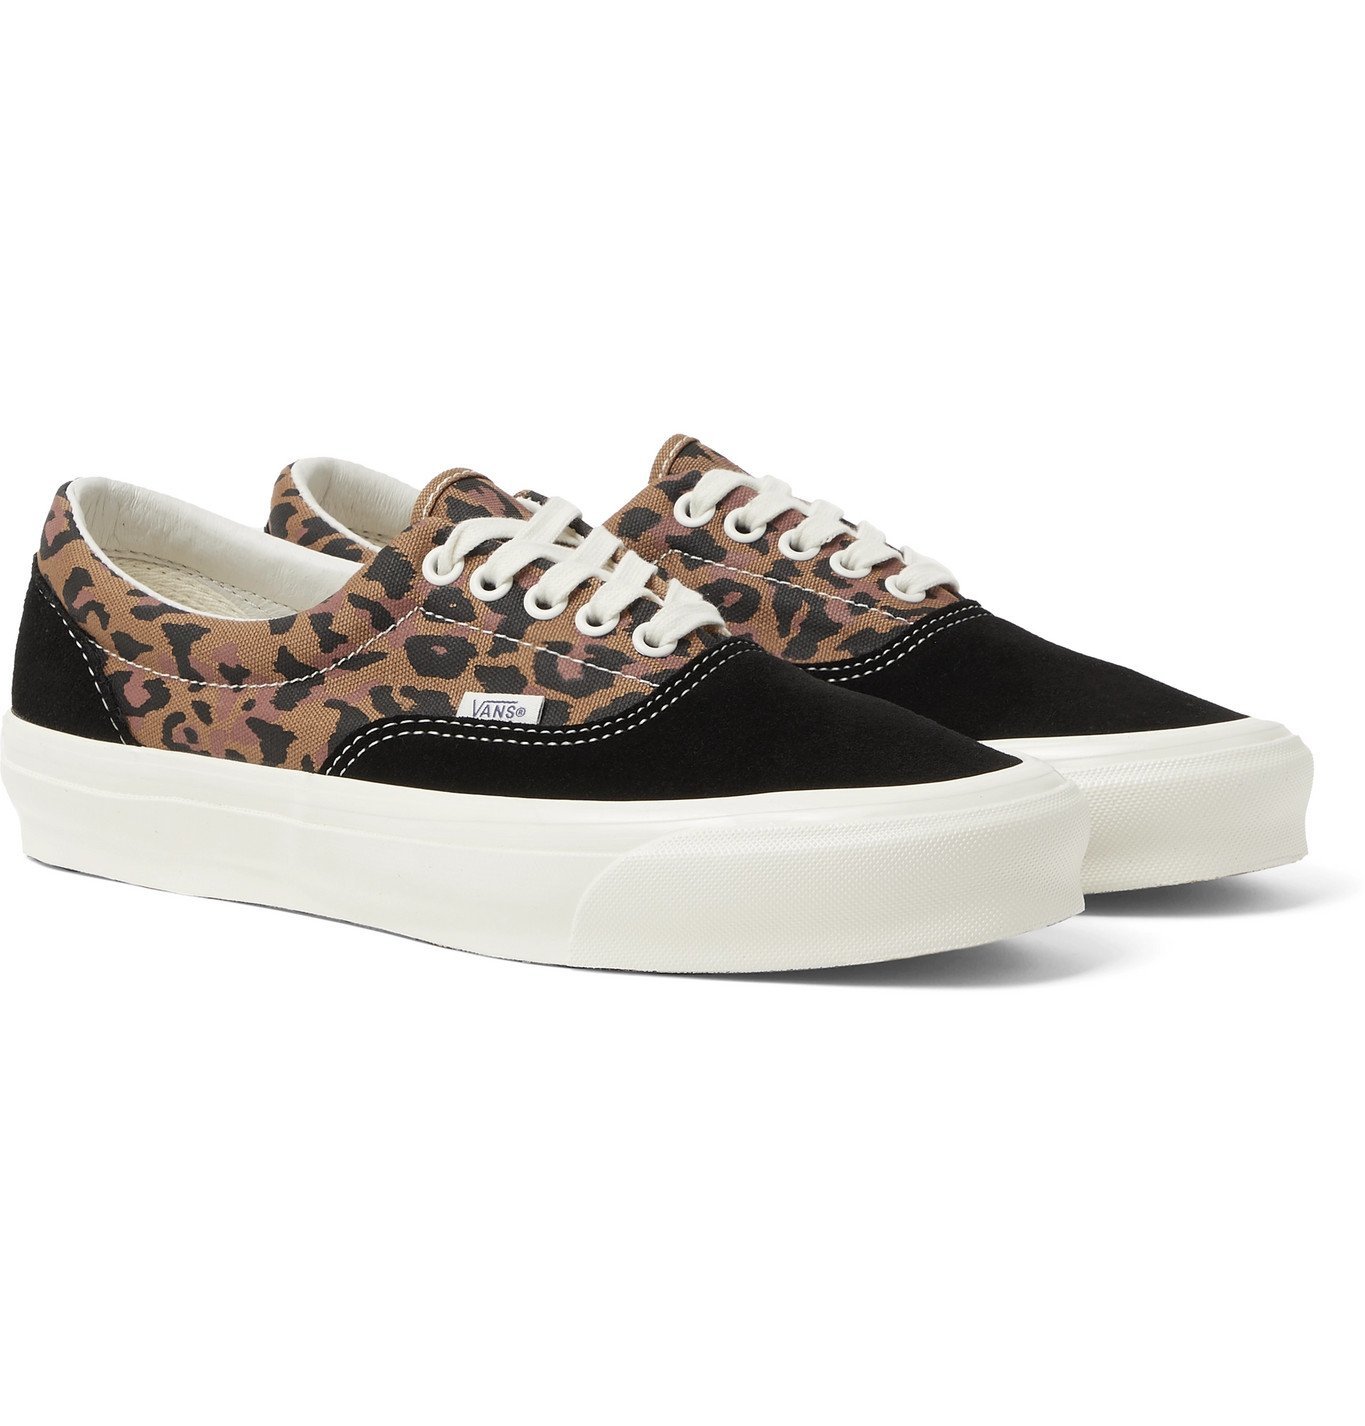 vans leopard shoes